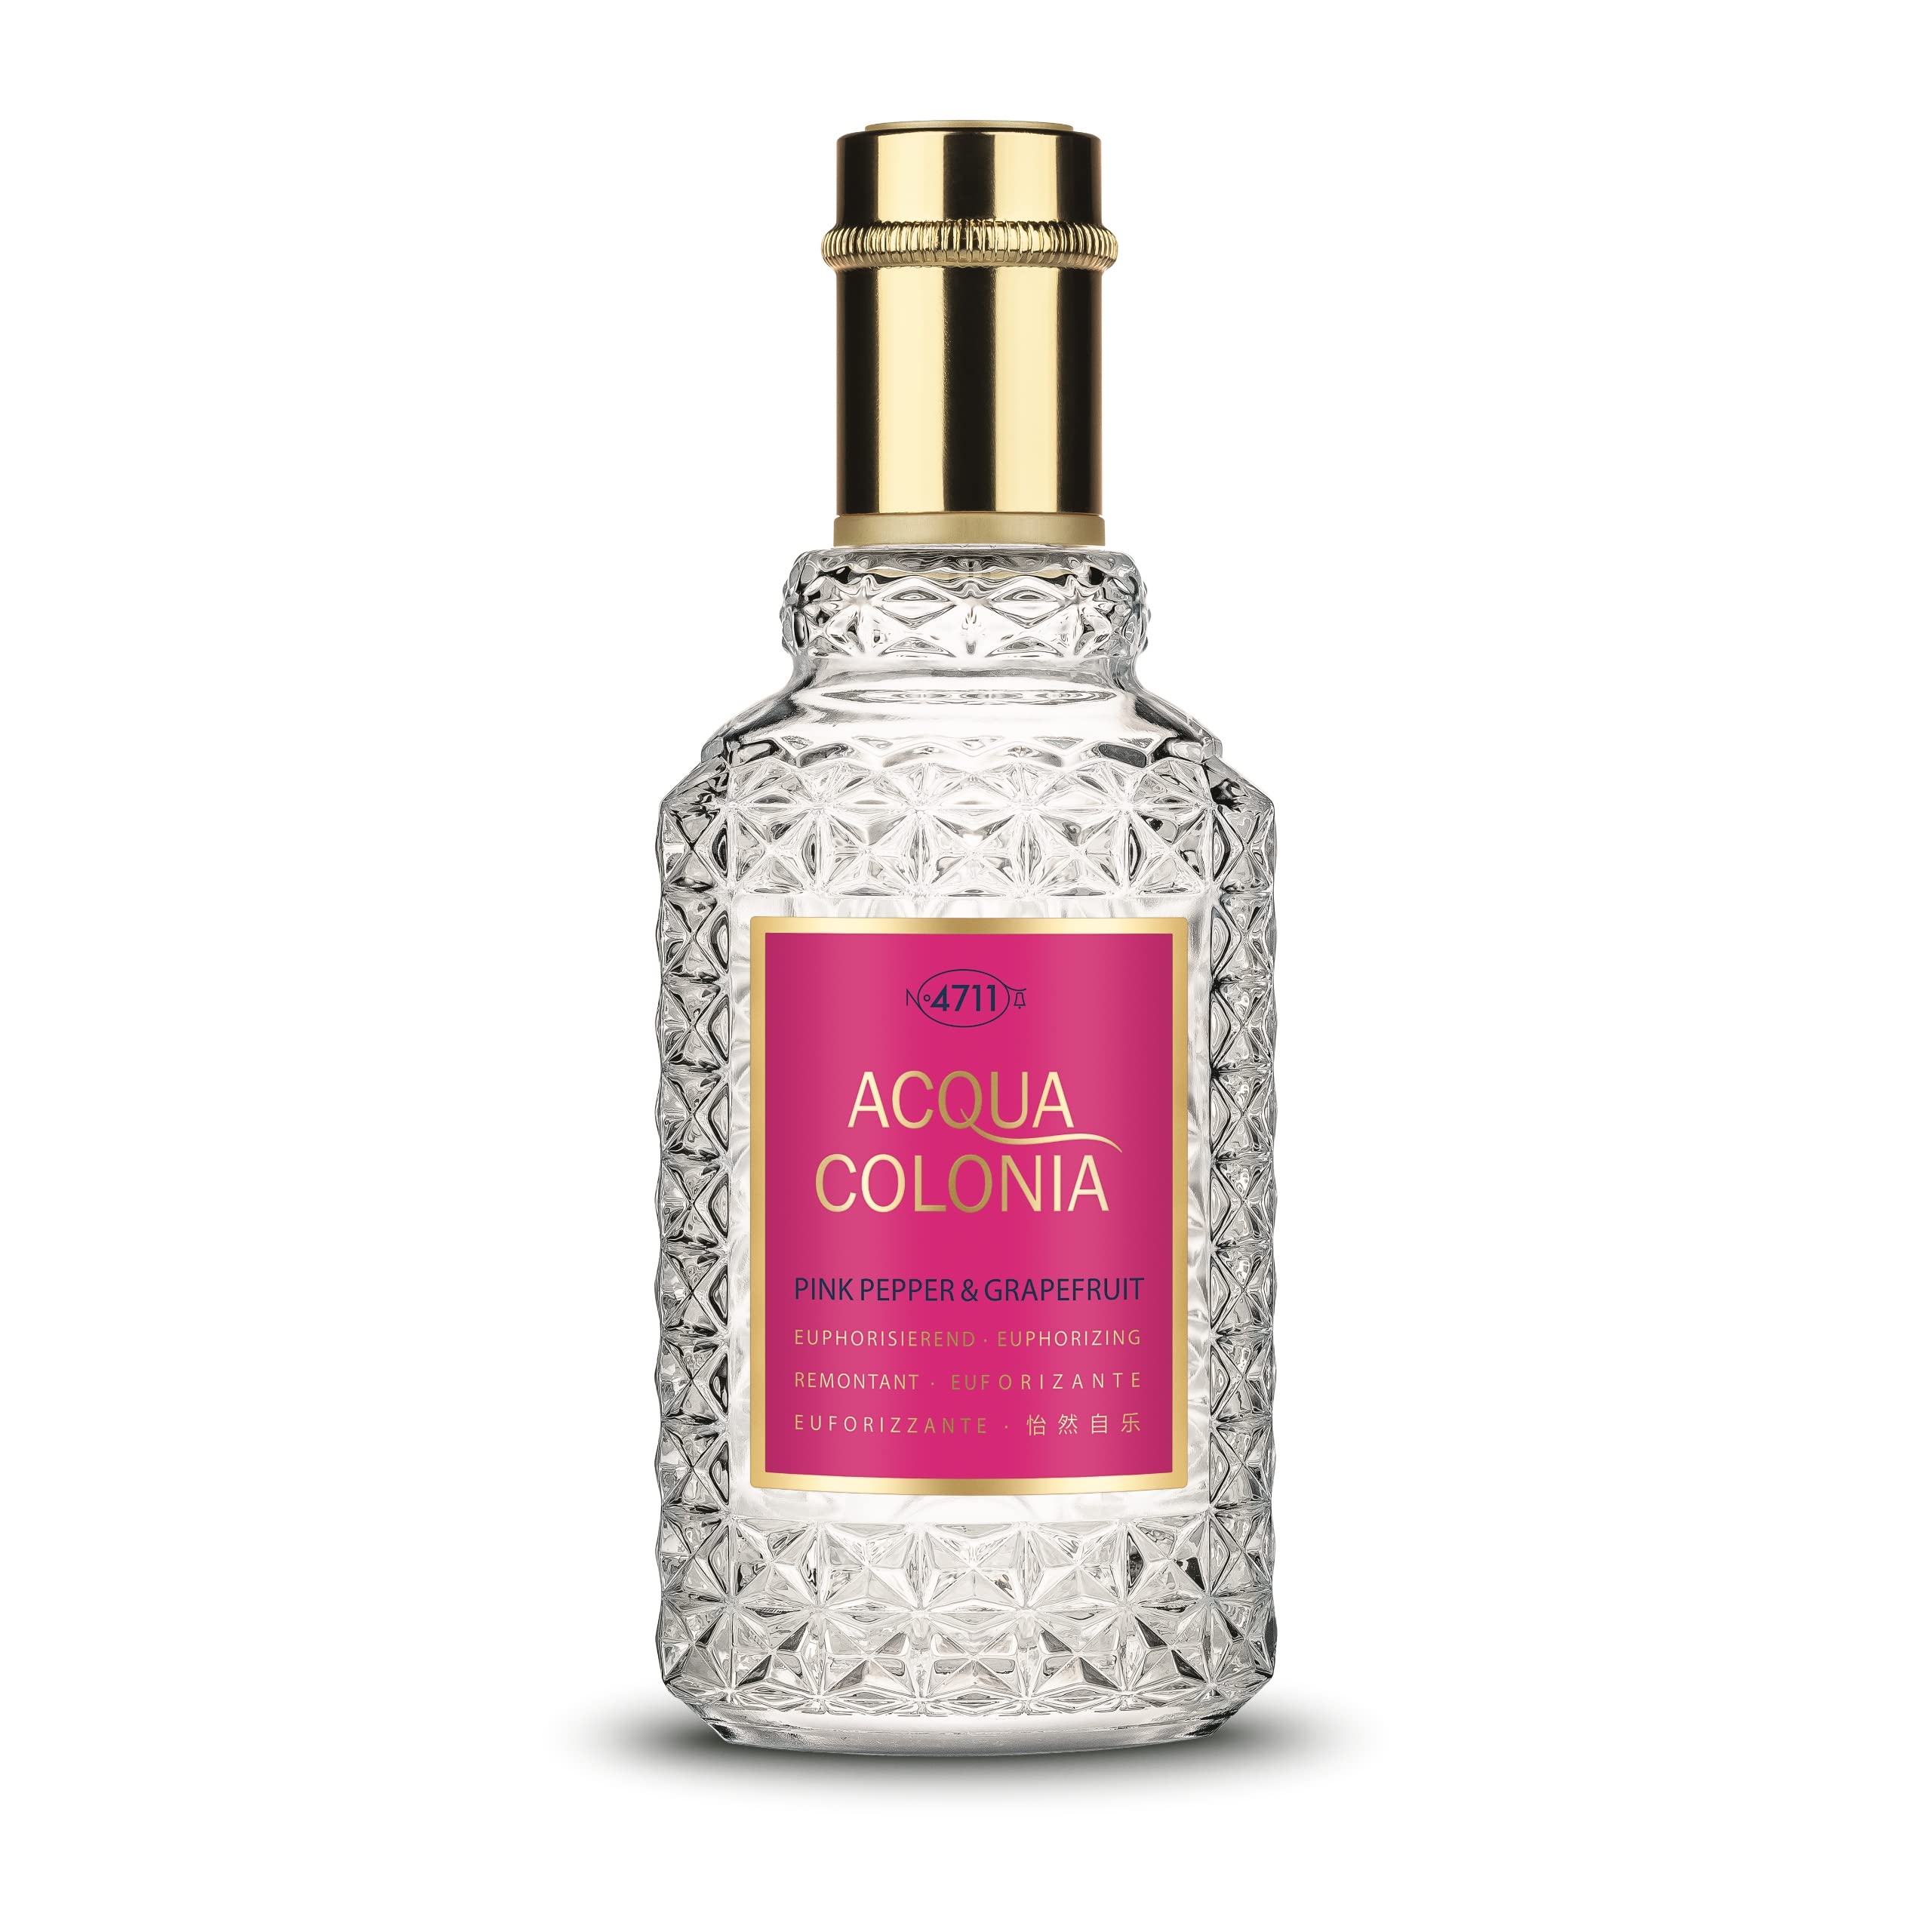 No. 4711 Acqua Colonia Exquisite Mini Collection | My Perfume Shop Australia